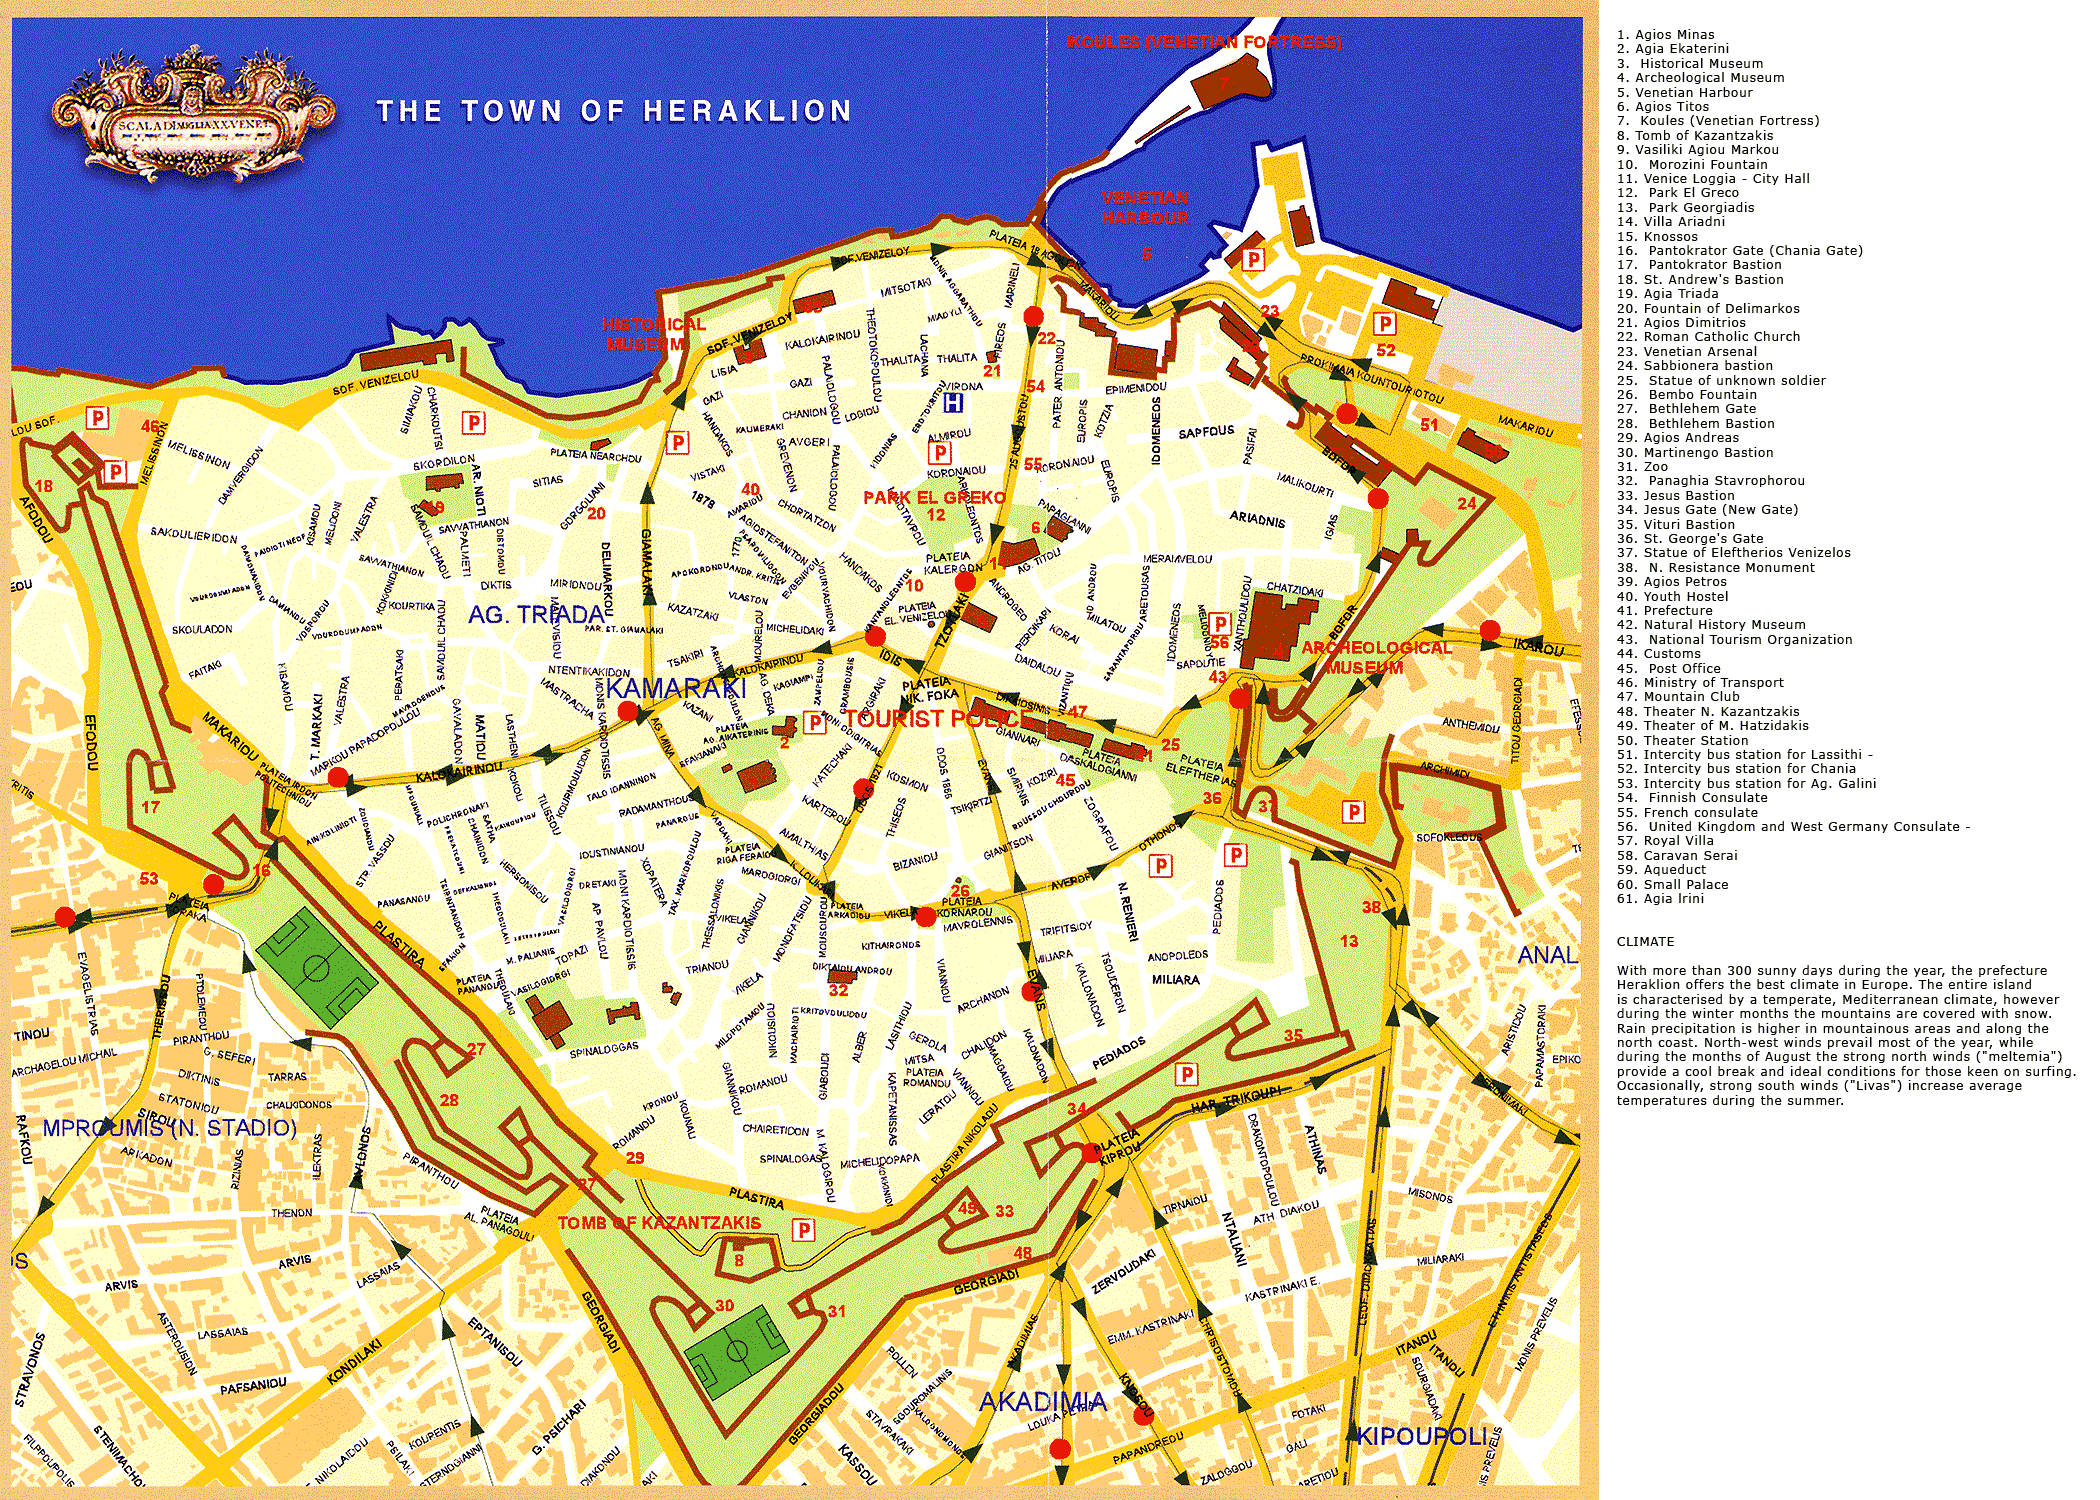 Χάρτης του κέντρου του Ηρακλείου με όλα τα αξιοθέατα